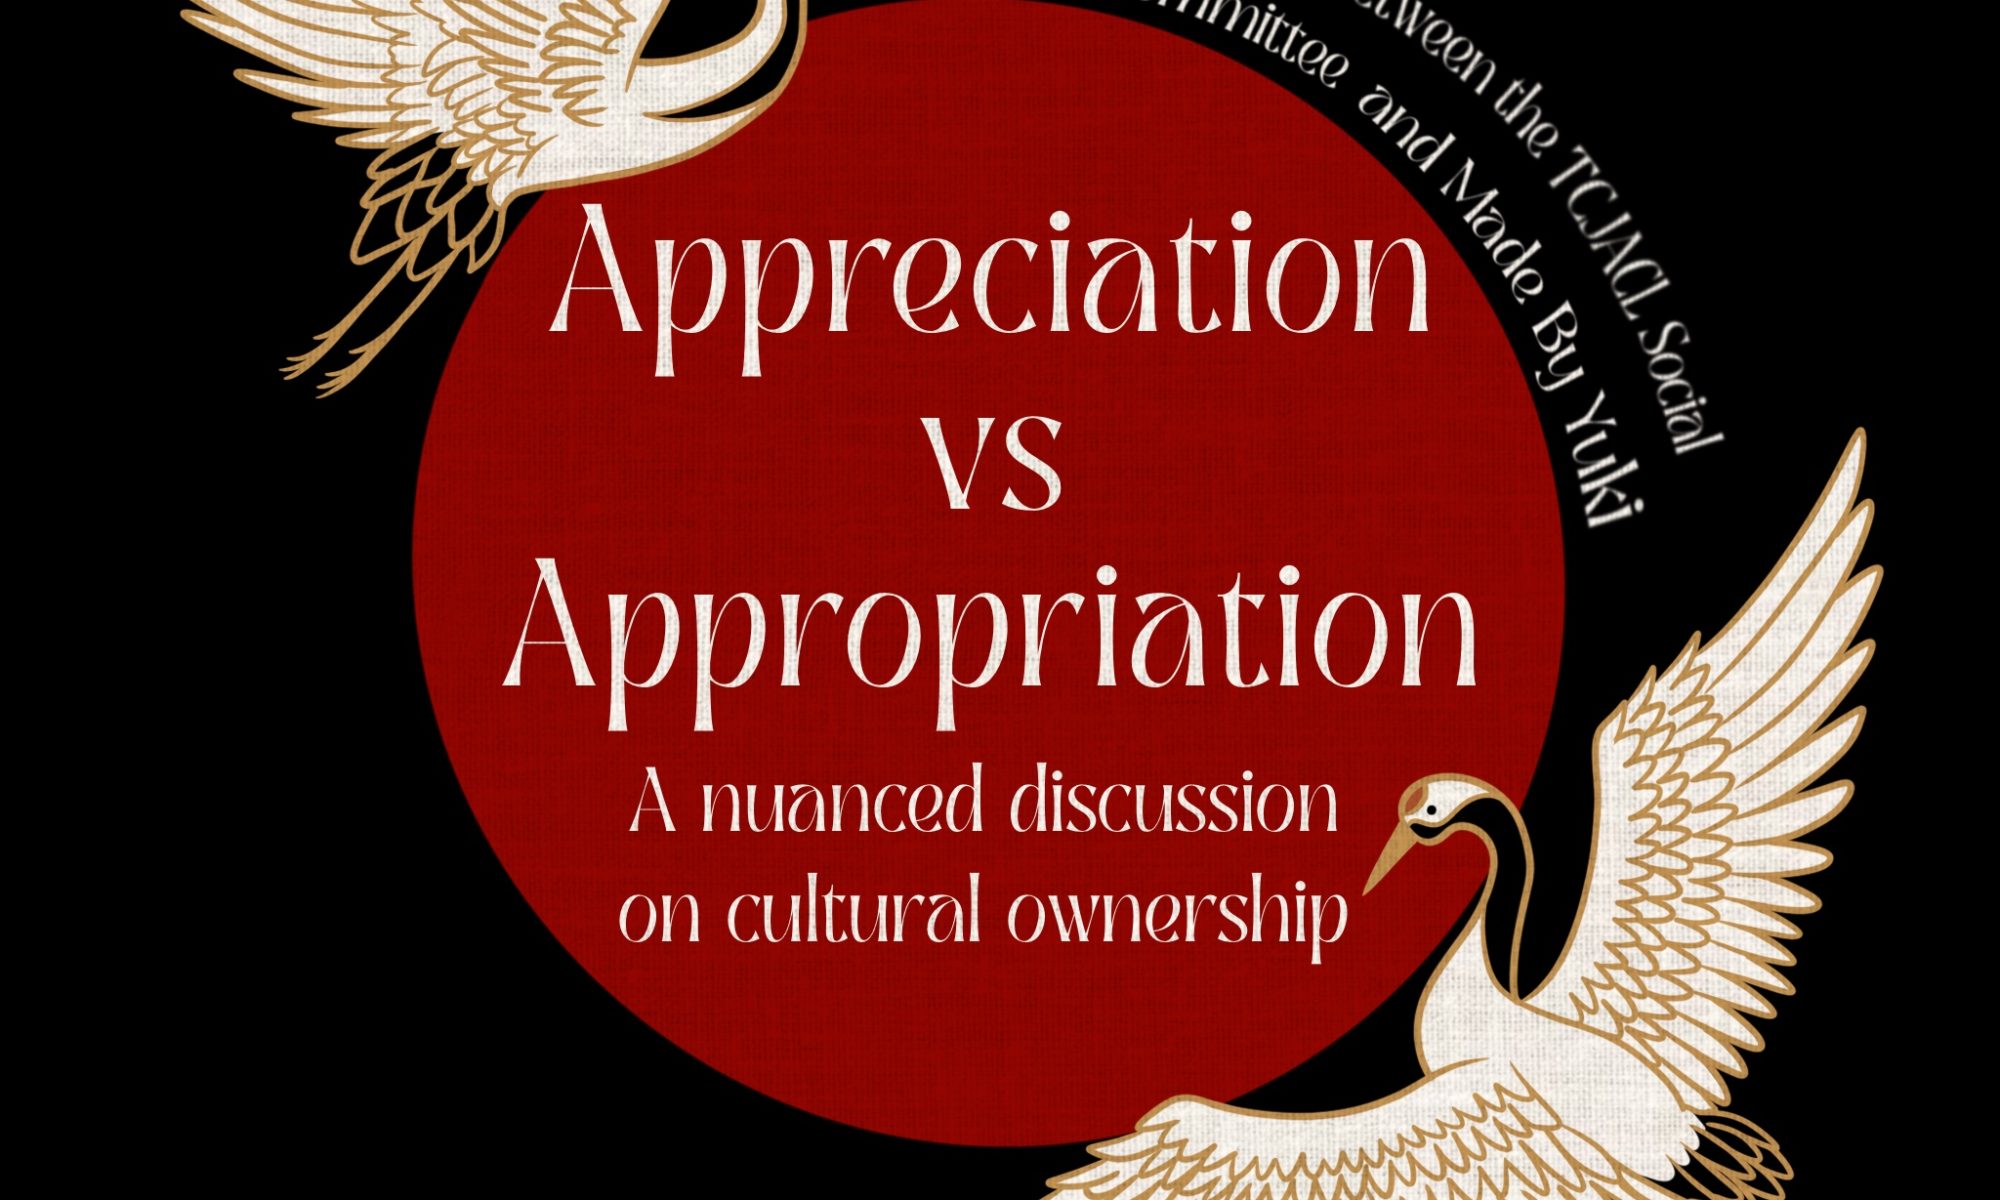 Discussion - No appreciation